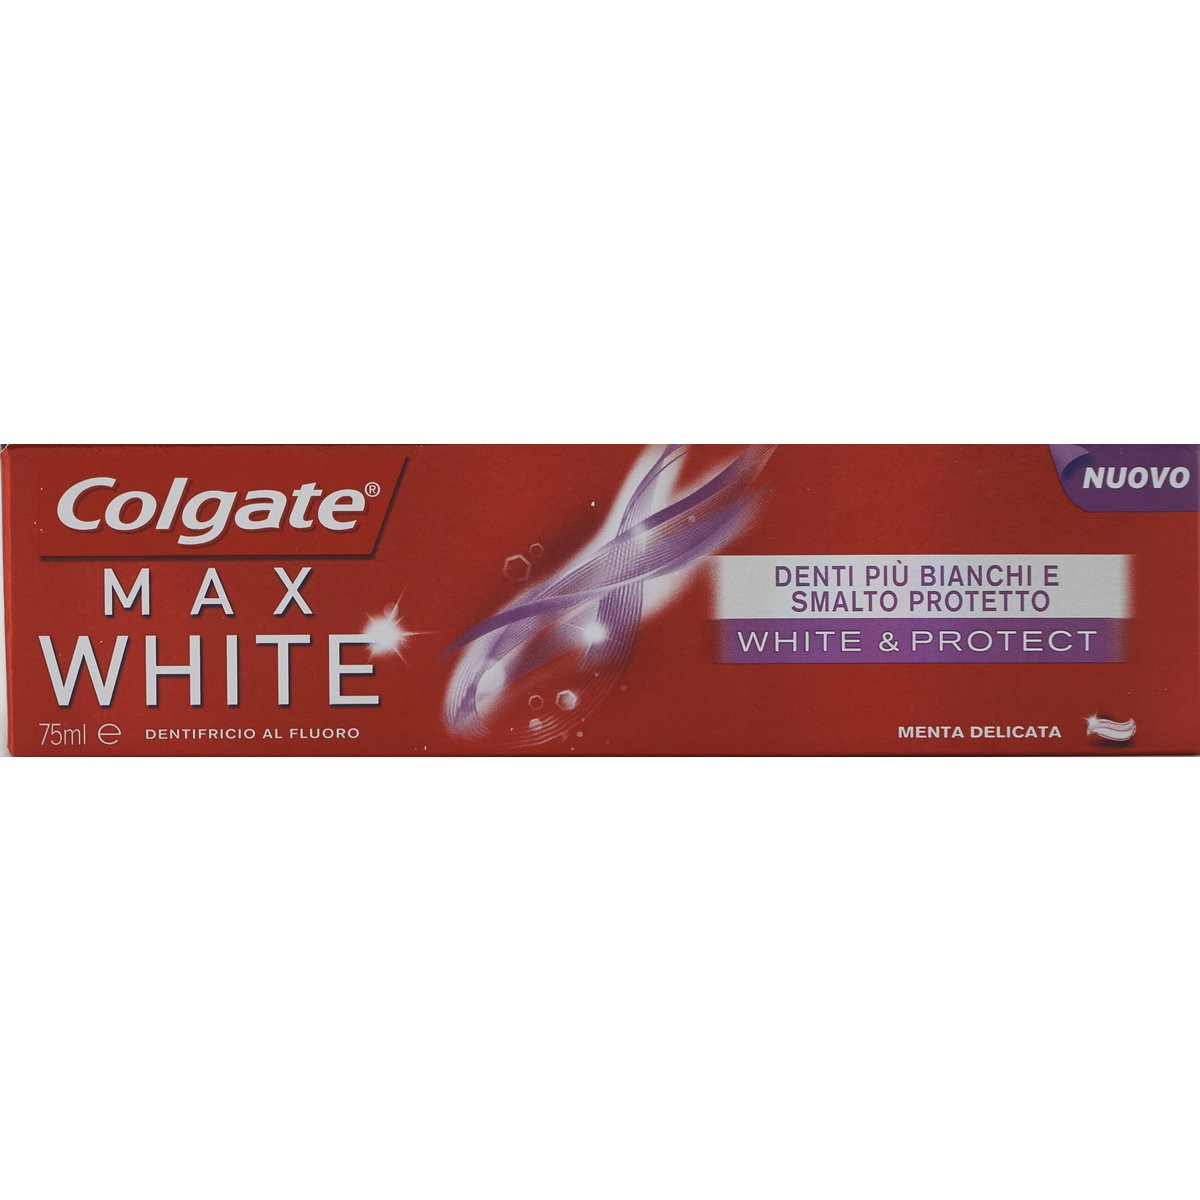 Colgate Dentifricio White&Protect Max White